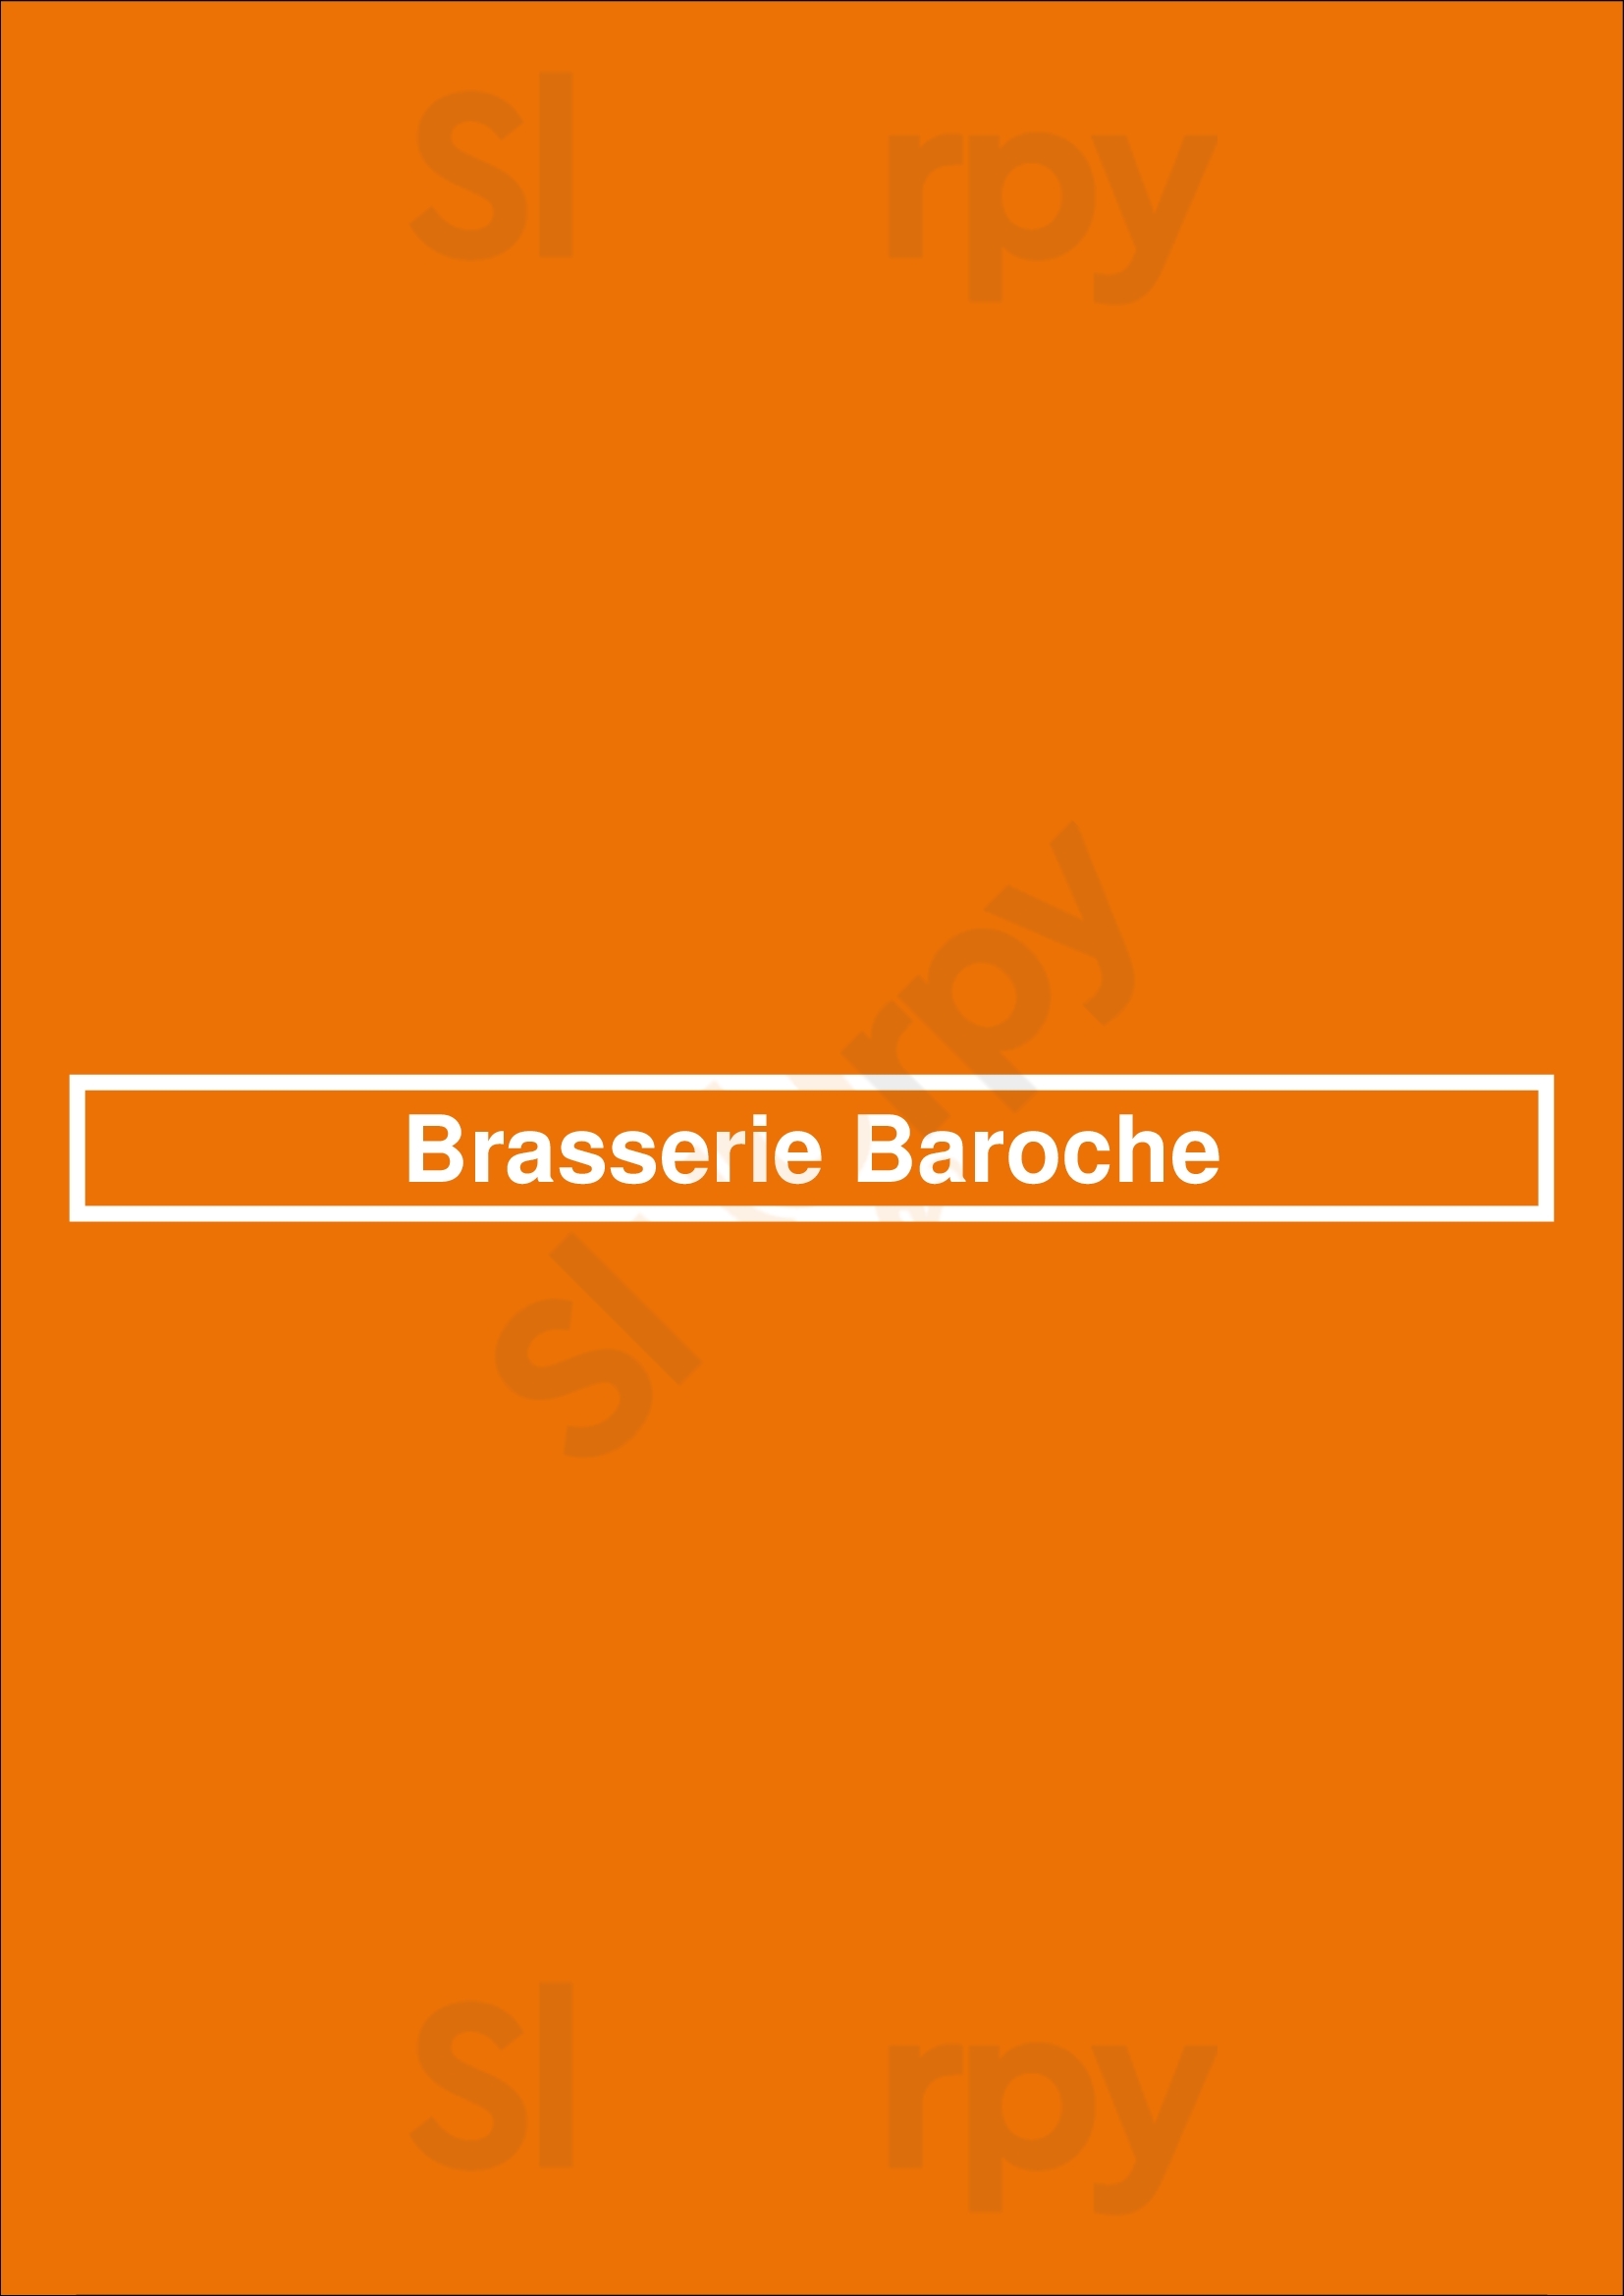 Brasserie Baroche Paris Menu - 1